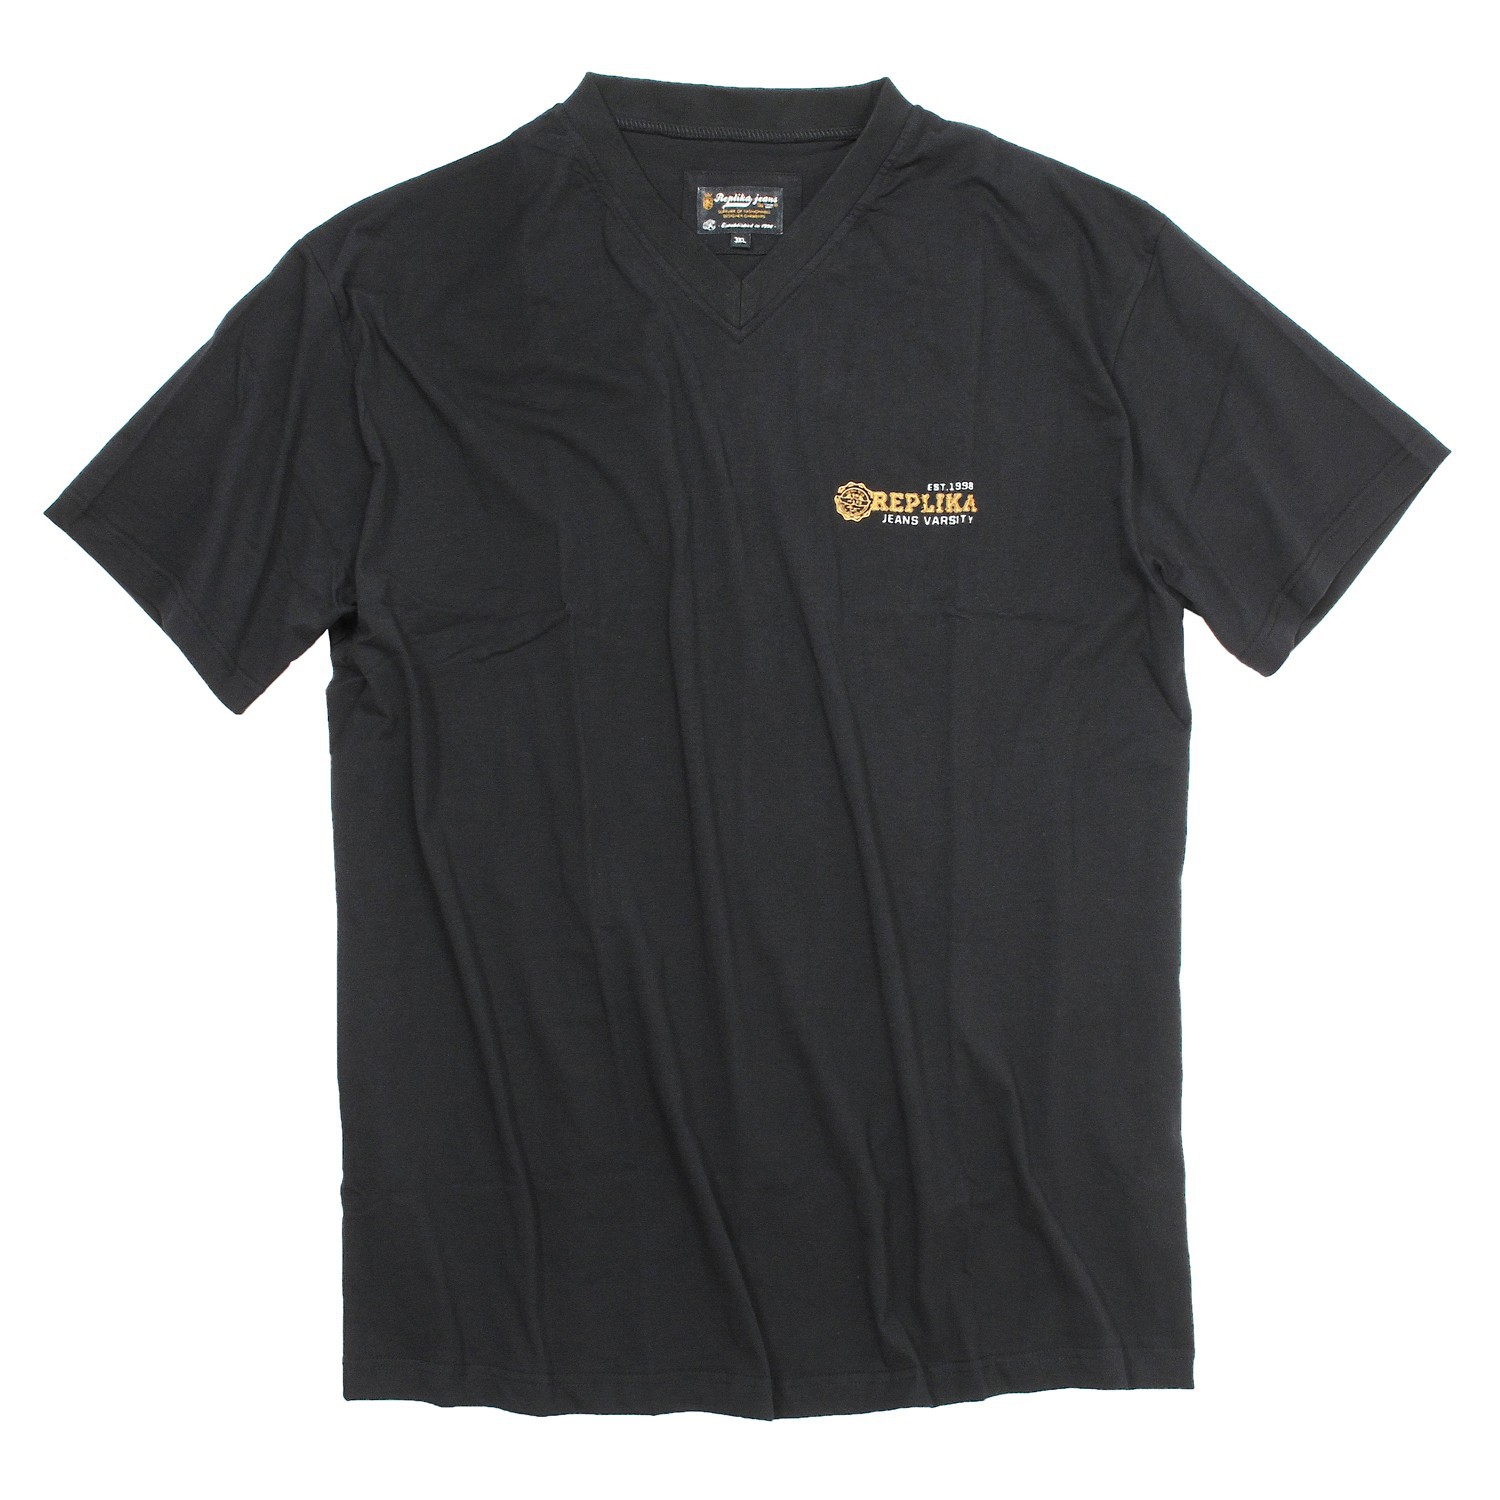 T-shirt noir de Replika grandes tailles jusqu'au 8XL